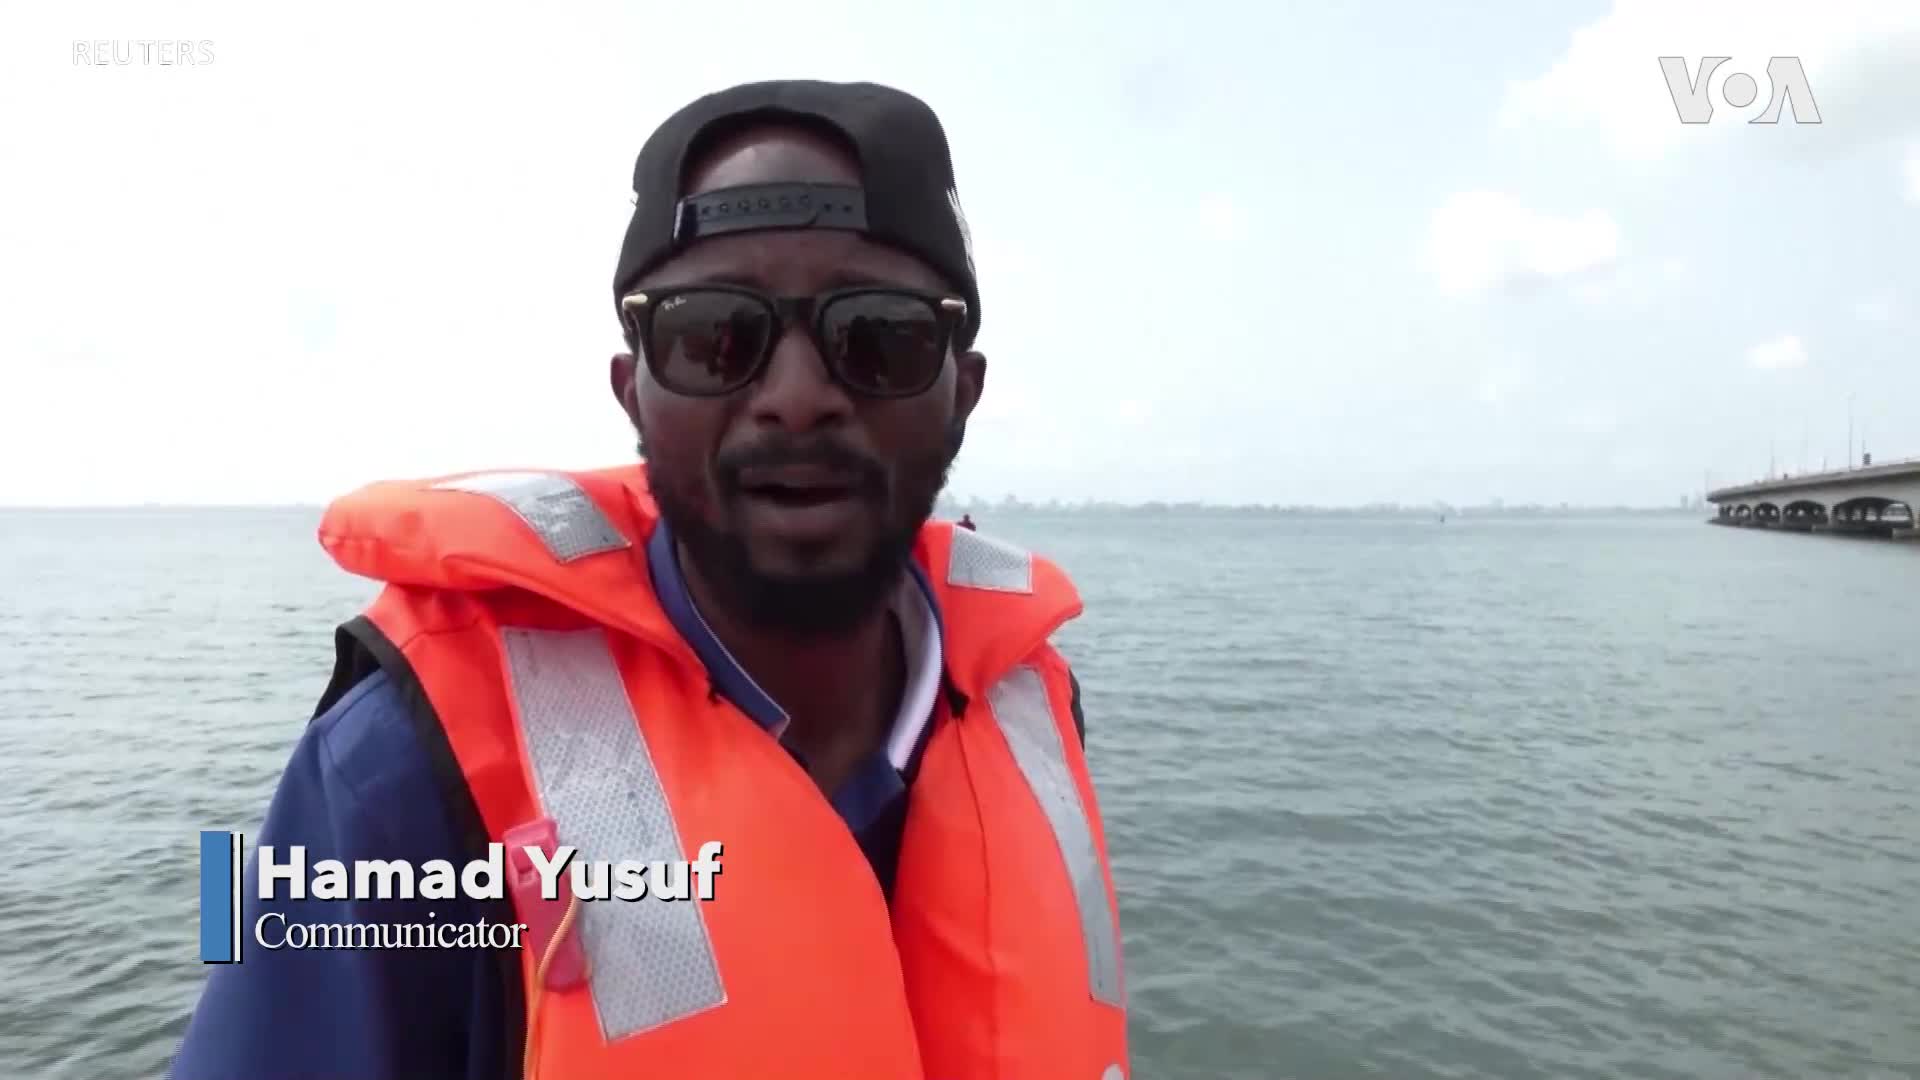 Нигерийски плувец се бори за повишаване осведомеността на хората за психичното здраве